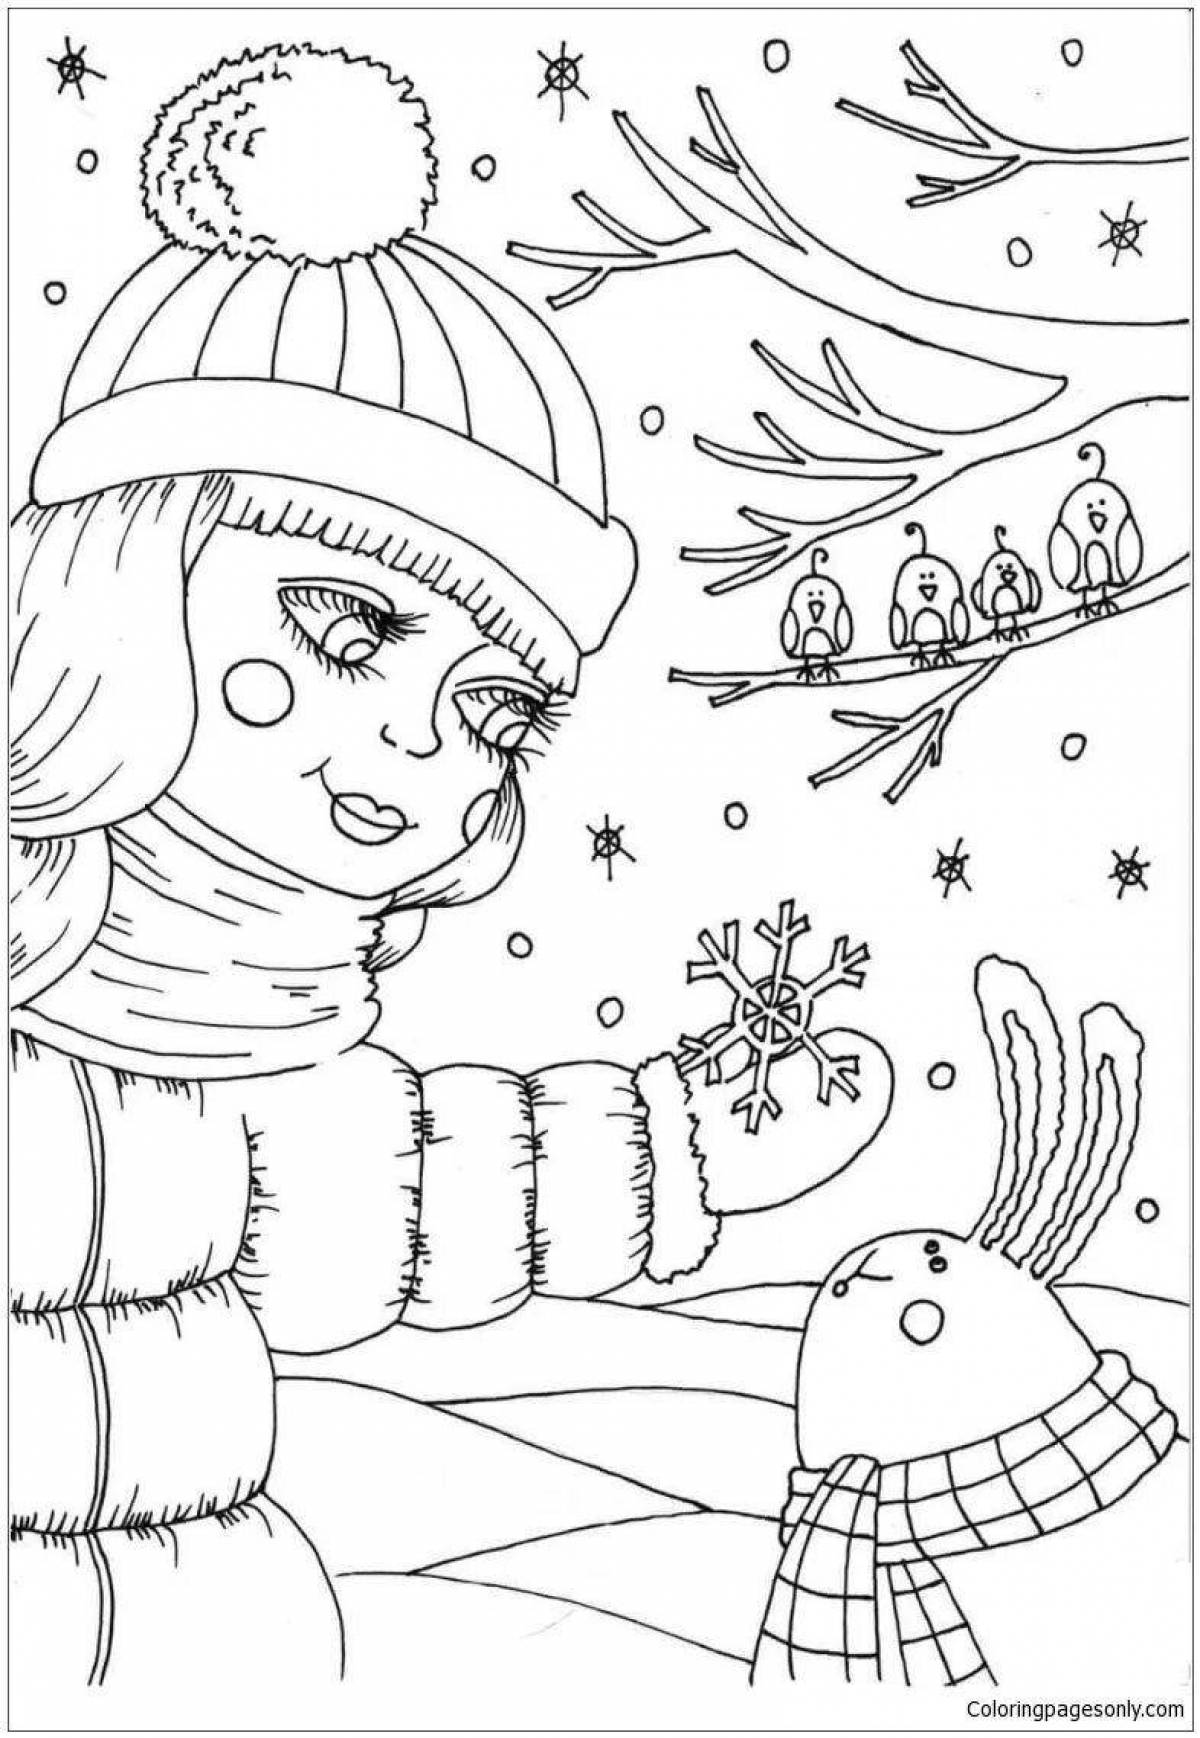 Comforting December coloring book for kids